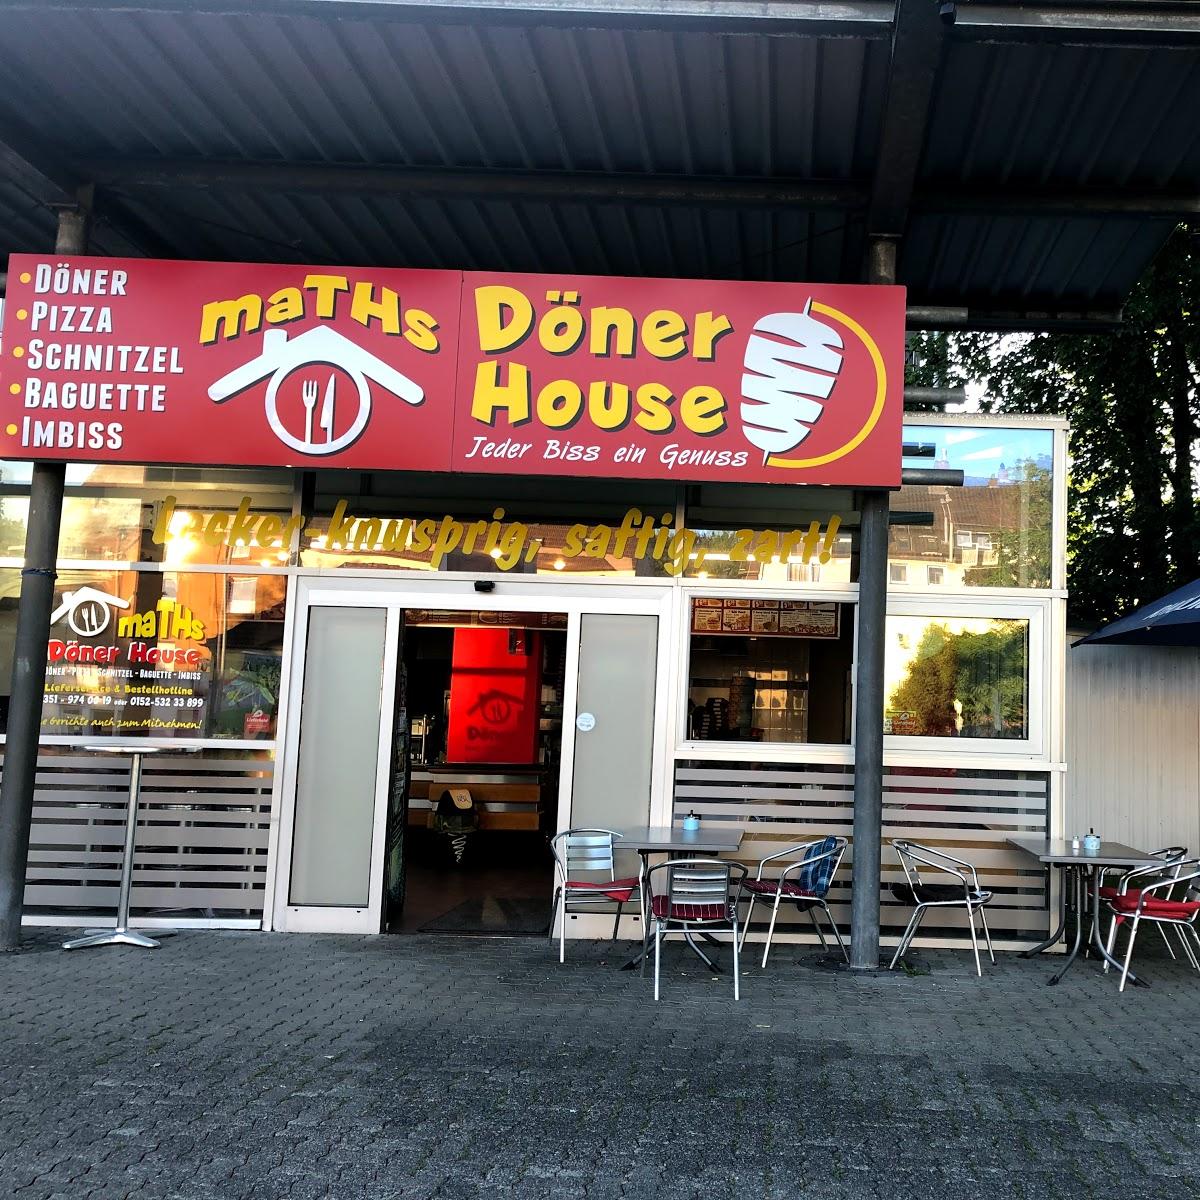 Restaurant "Maths Döner House" in Lüdenscheid